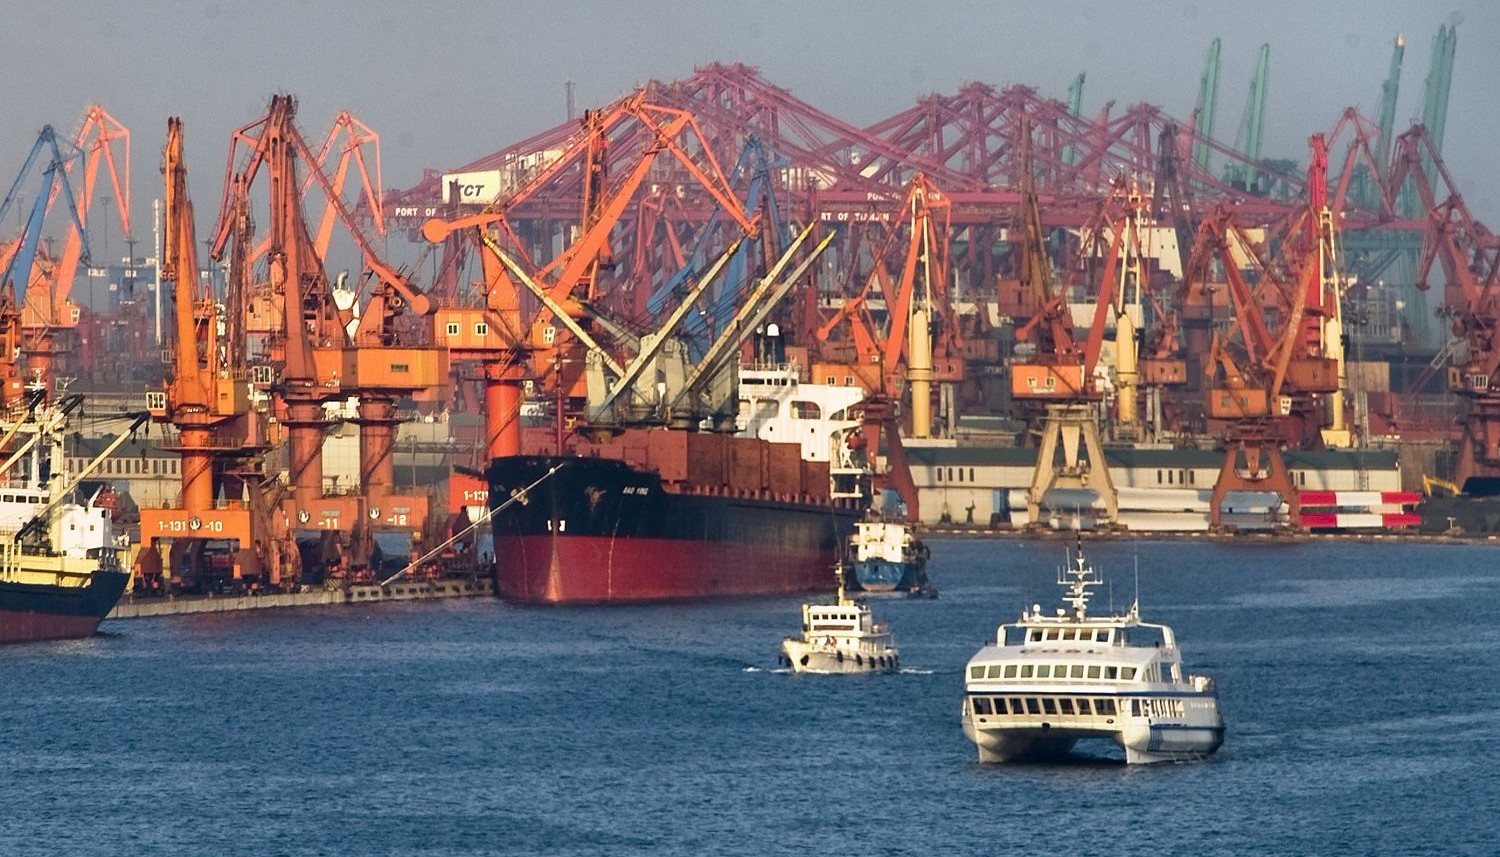 长期受印度贸易封锁,这国向中国求助后,获得中国四大港口使用权